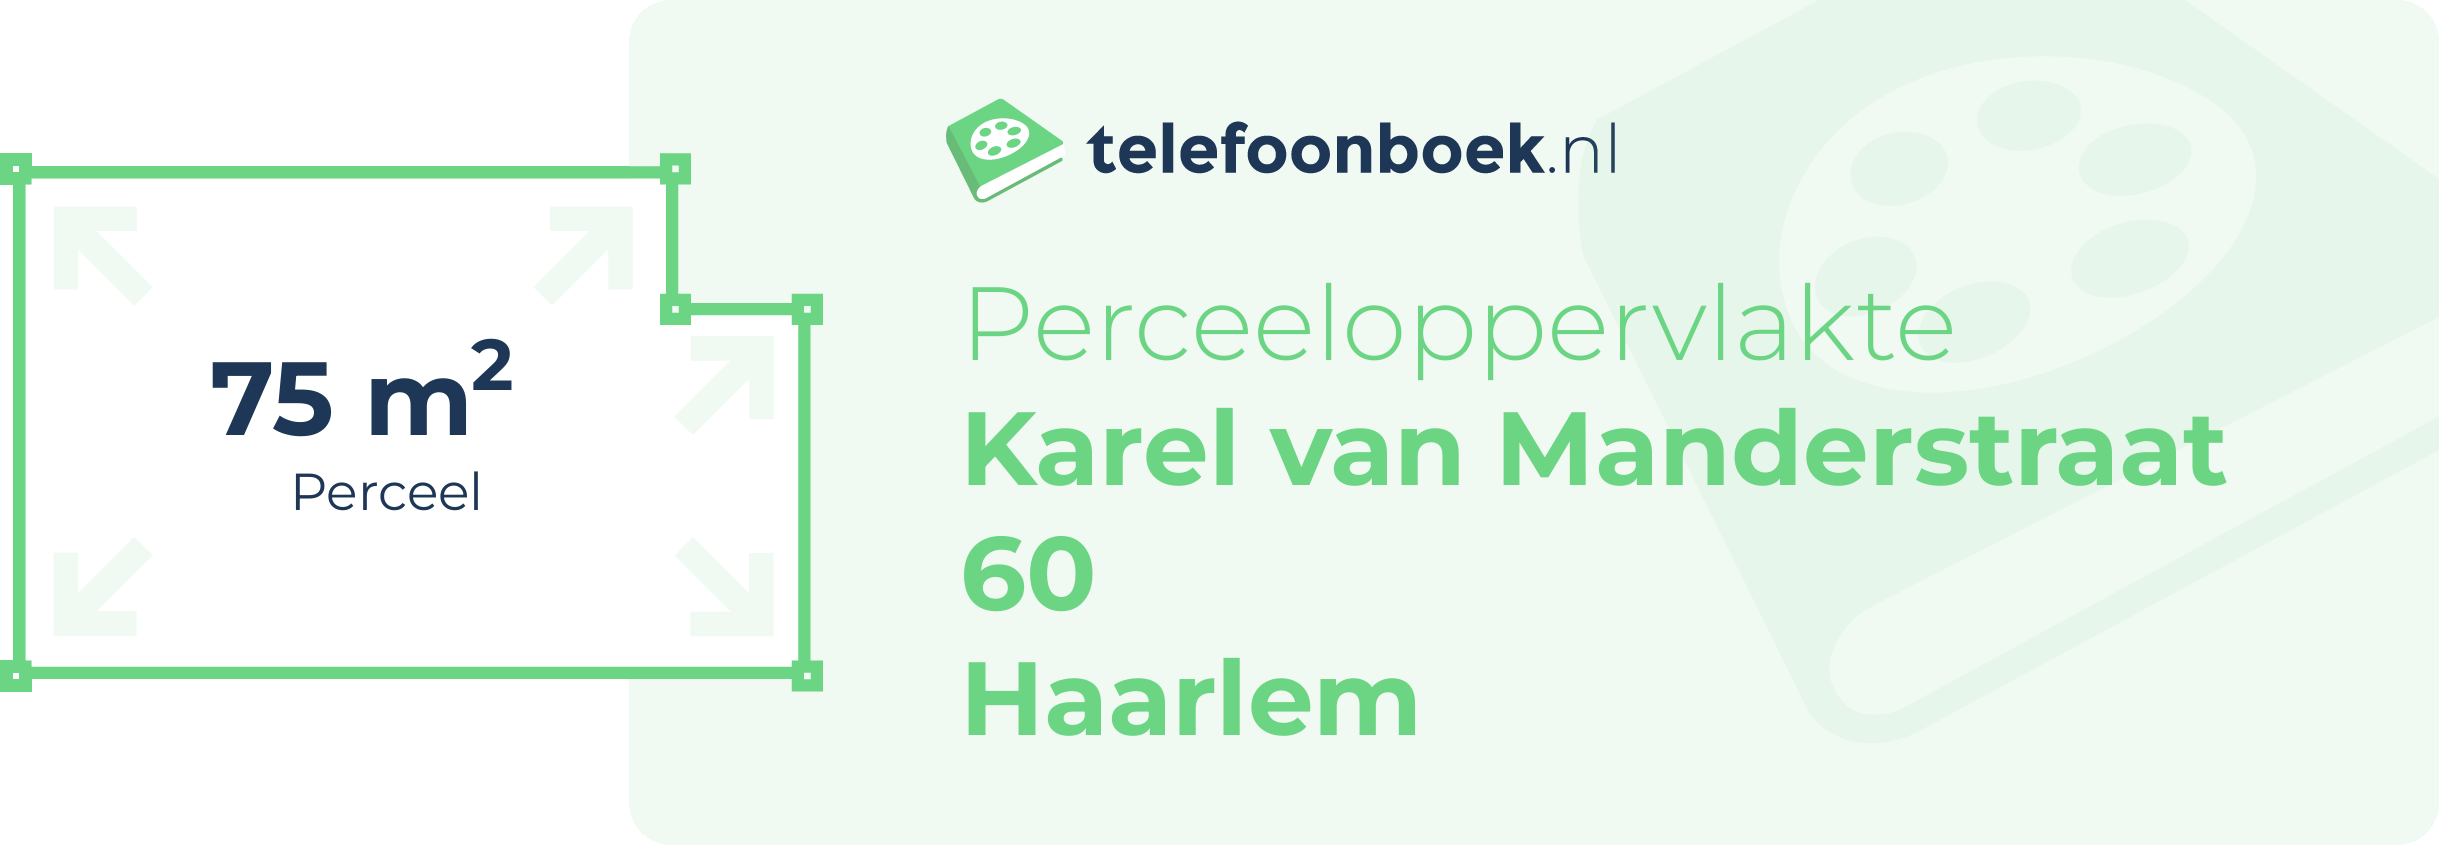 Perceeloppervlakte Karel Van Manderstraat 60 Haarlem